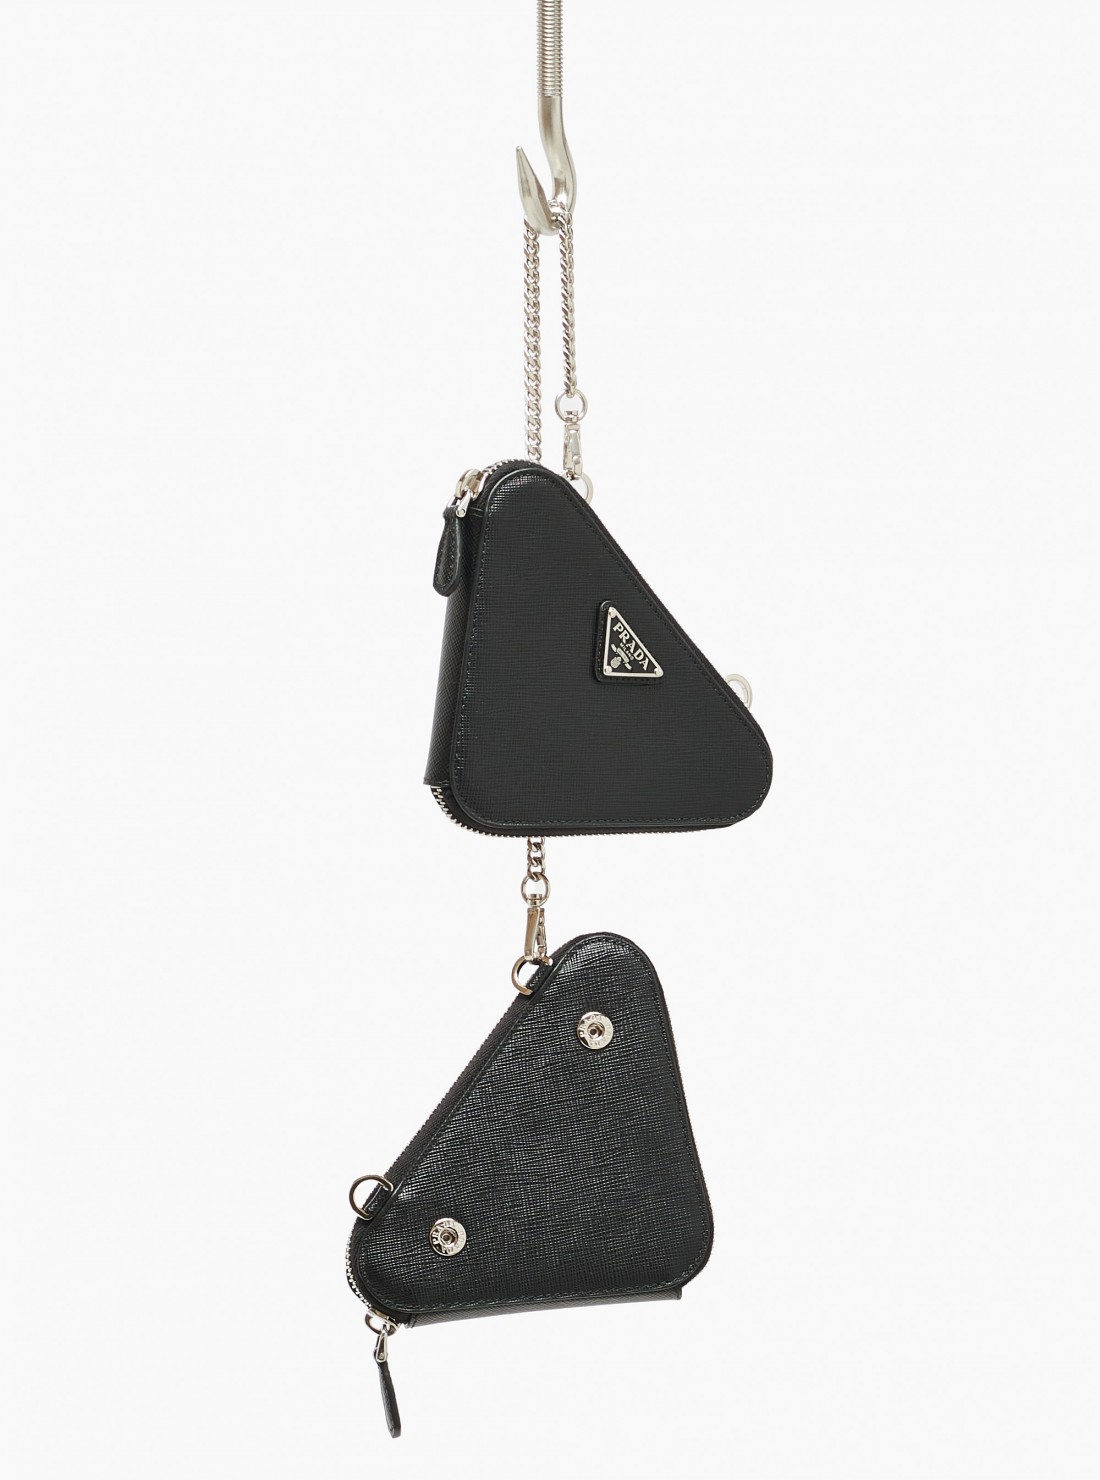 Prada Saffiano Leather Mini Pouch in Metallic